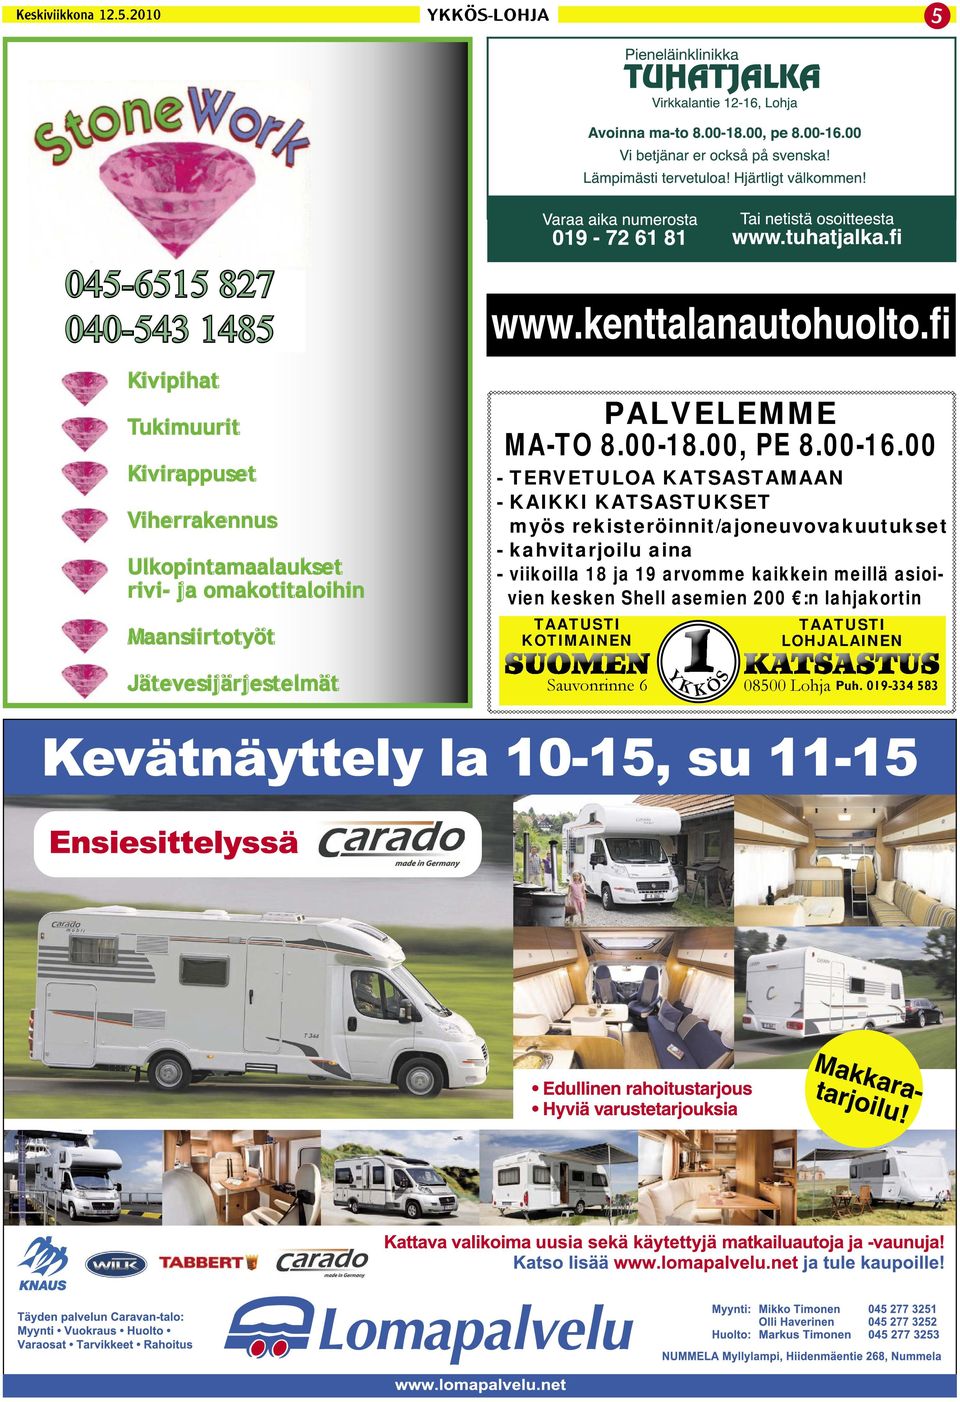 Maansiirtotyöt www.kenttalanautohuolto.fi PALVELEMME MA-TO 8.00-18.00, PE 8.00-16.